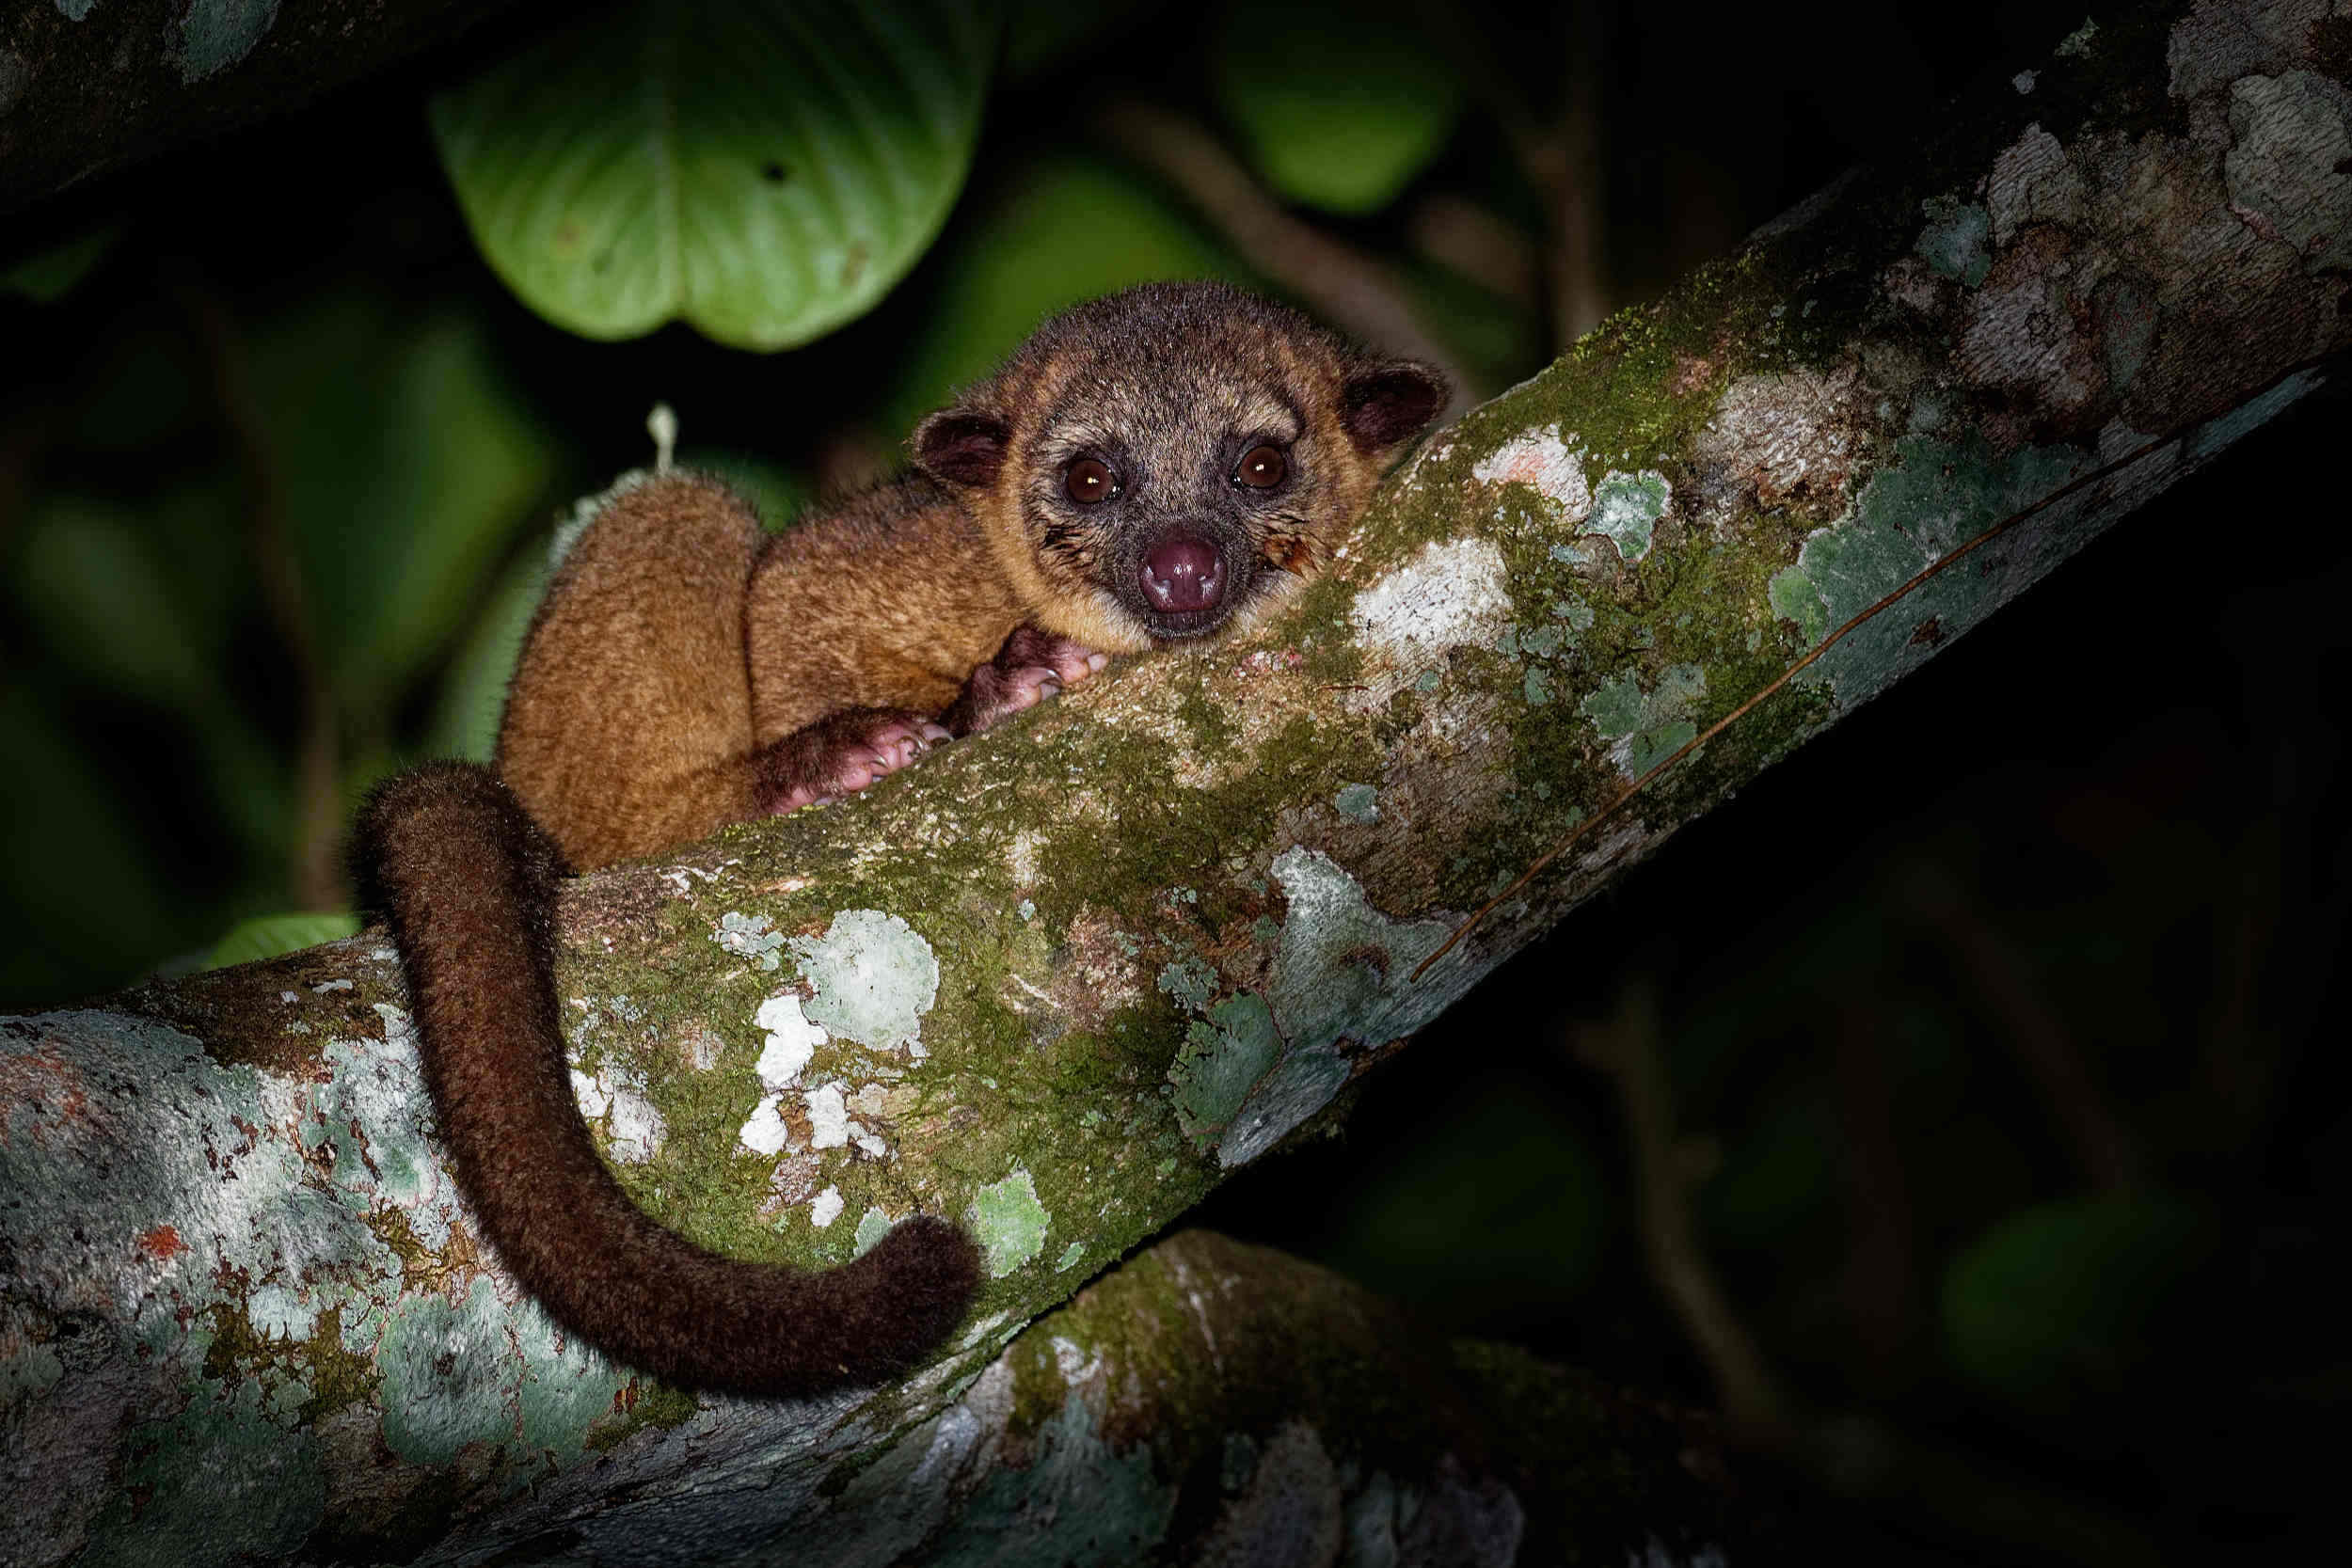 Kincajou Potos flavus photographié de nuit sur une branche de la jungle équatoriale forêt tropicale humide du Costa Rica